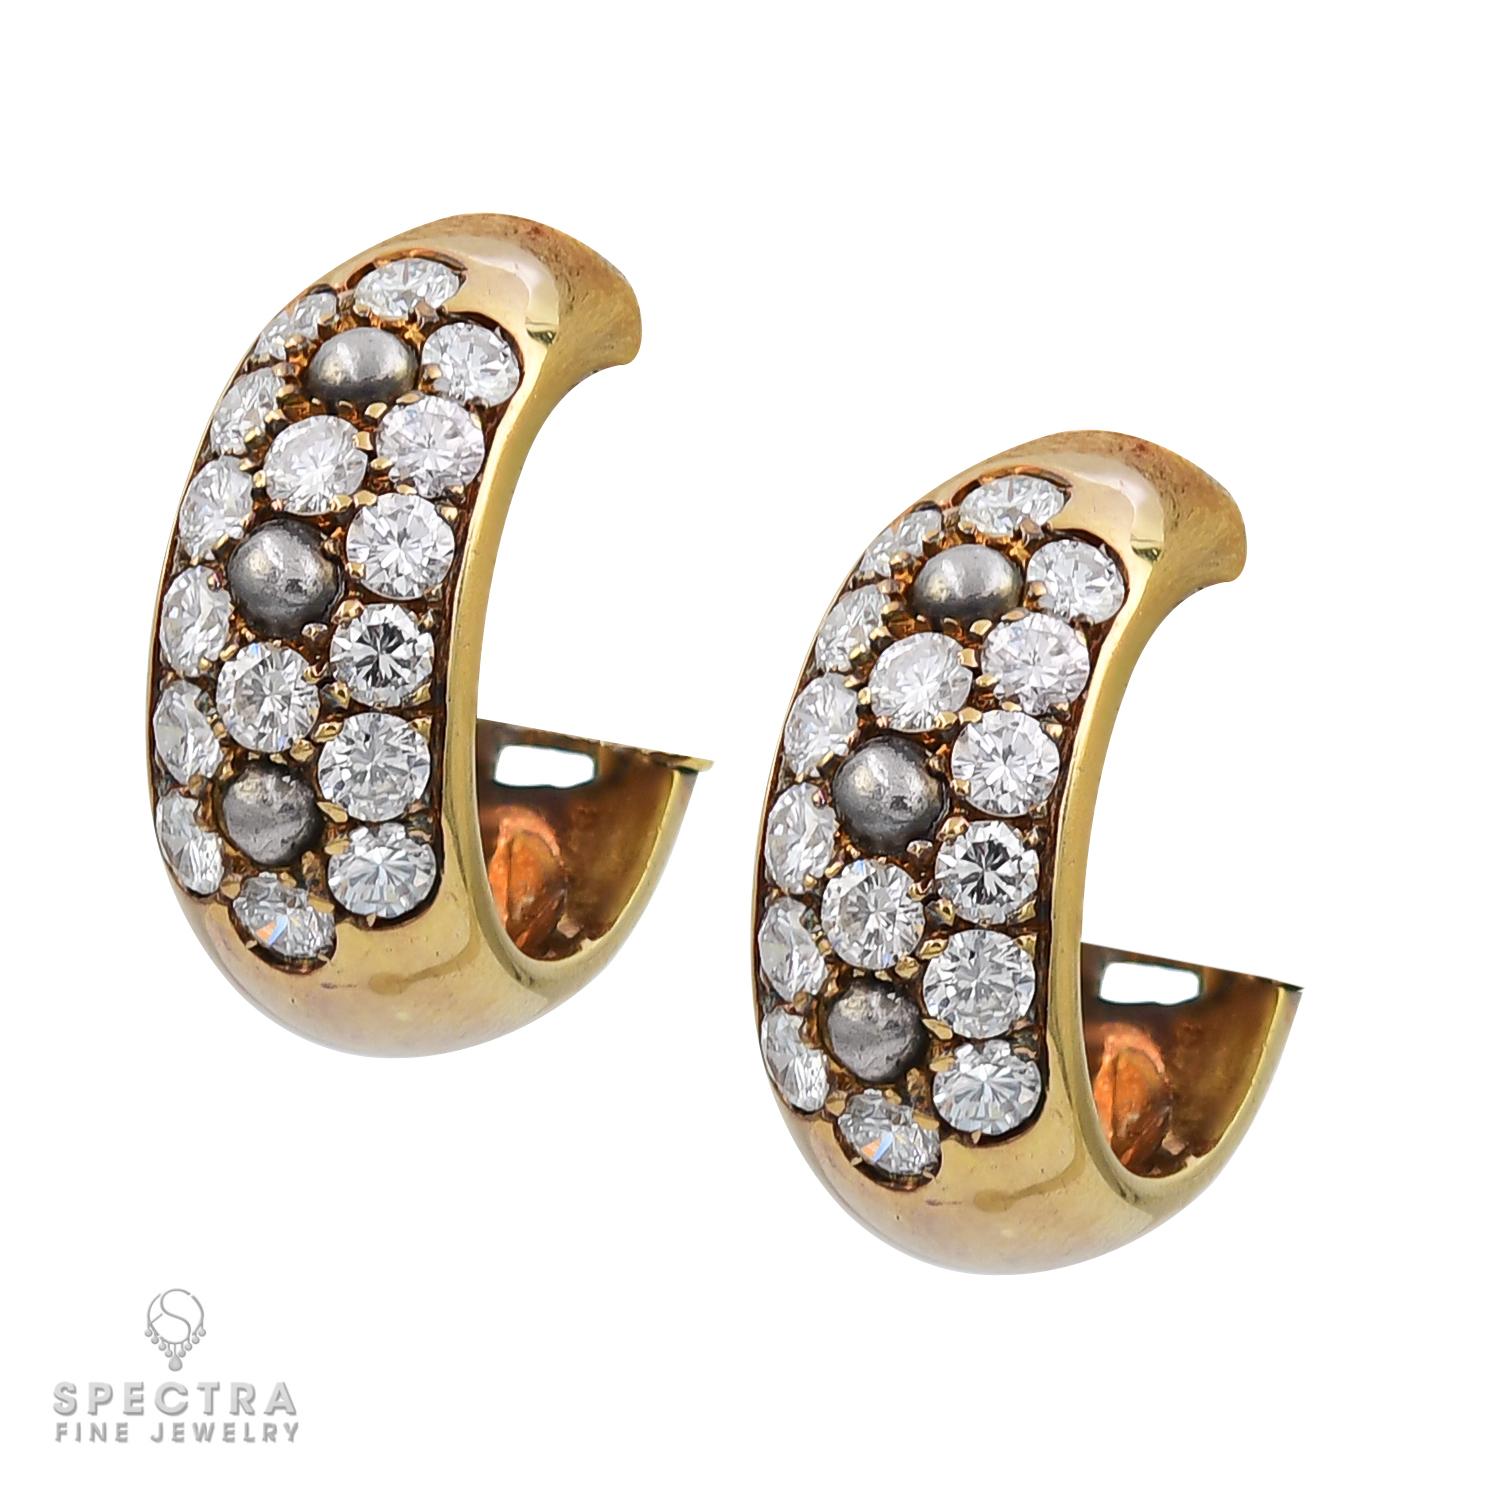 Une belle suite de bijoux comprenant une paire de clips d'oreille et une bague, réalisée par Cartier vers les années 1970-80.

Les clips d'oreilles sont sertis de 32 diamants ronds de taille brillant pesant au total environ 1,92 carats.
Chaque